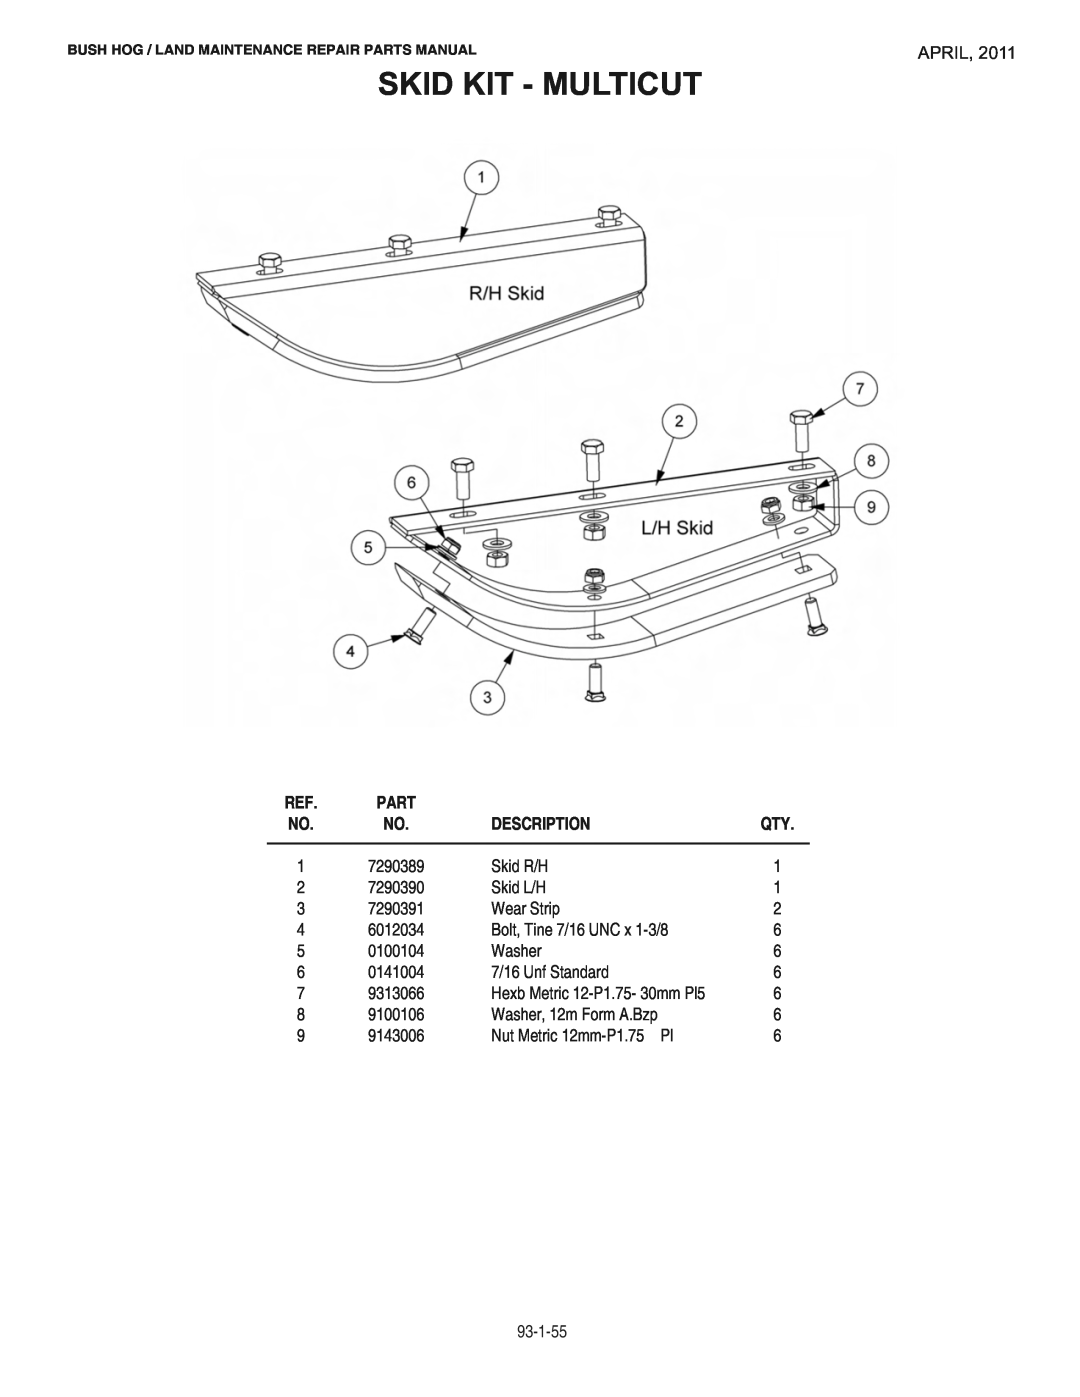 Bush Hog RMB1865E manual Skid Kit - Multicut, April, Description, Hexb Metric 12-P1.75- 30mm Pl5, Part 